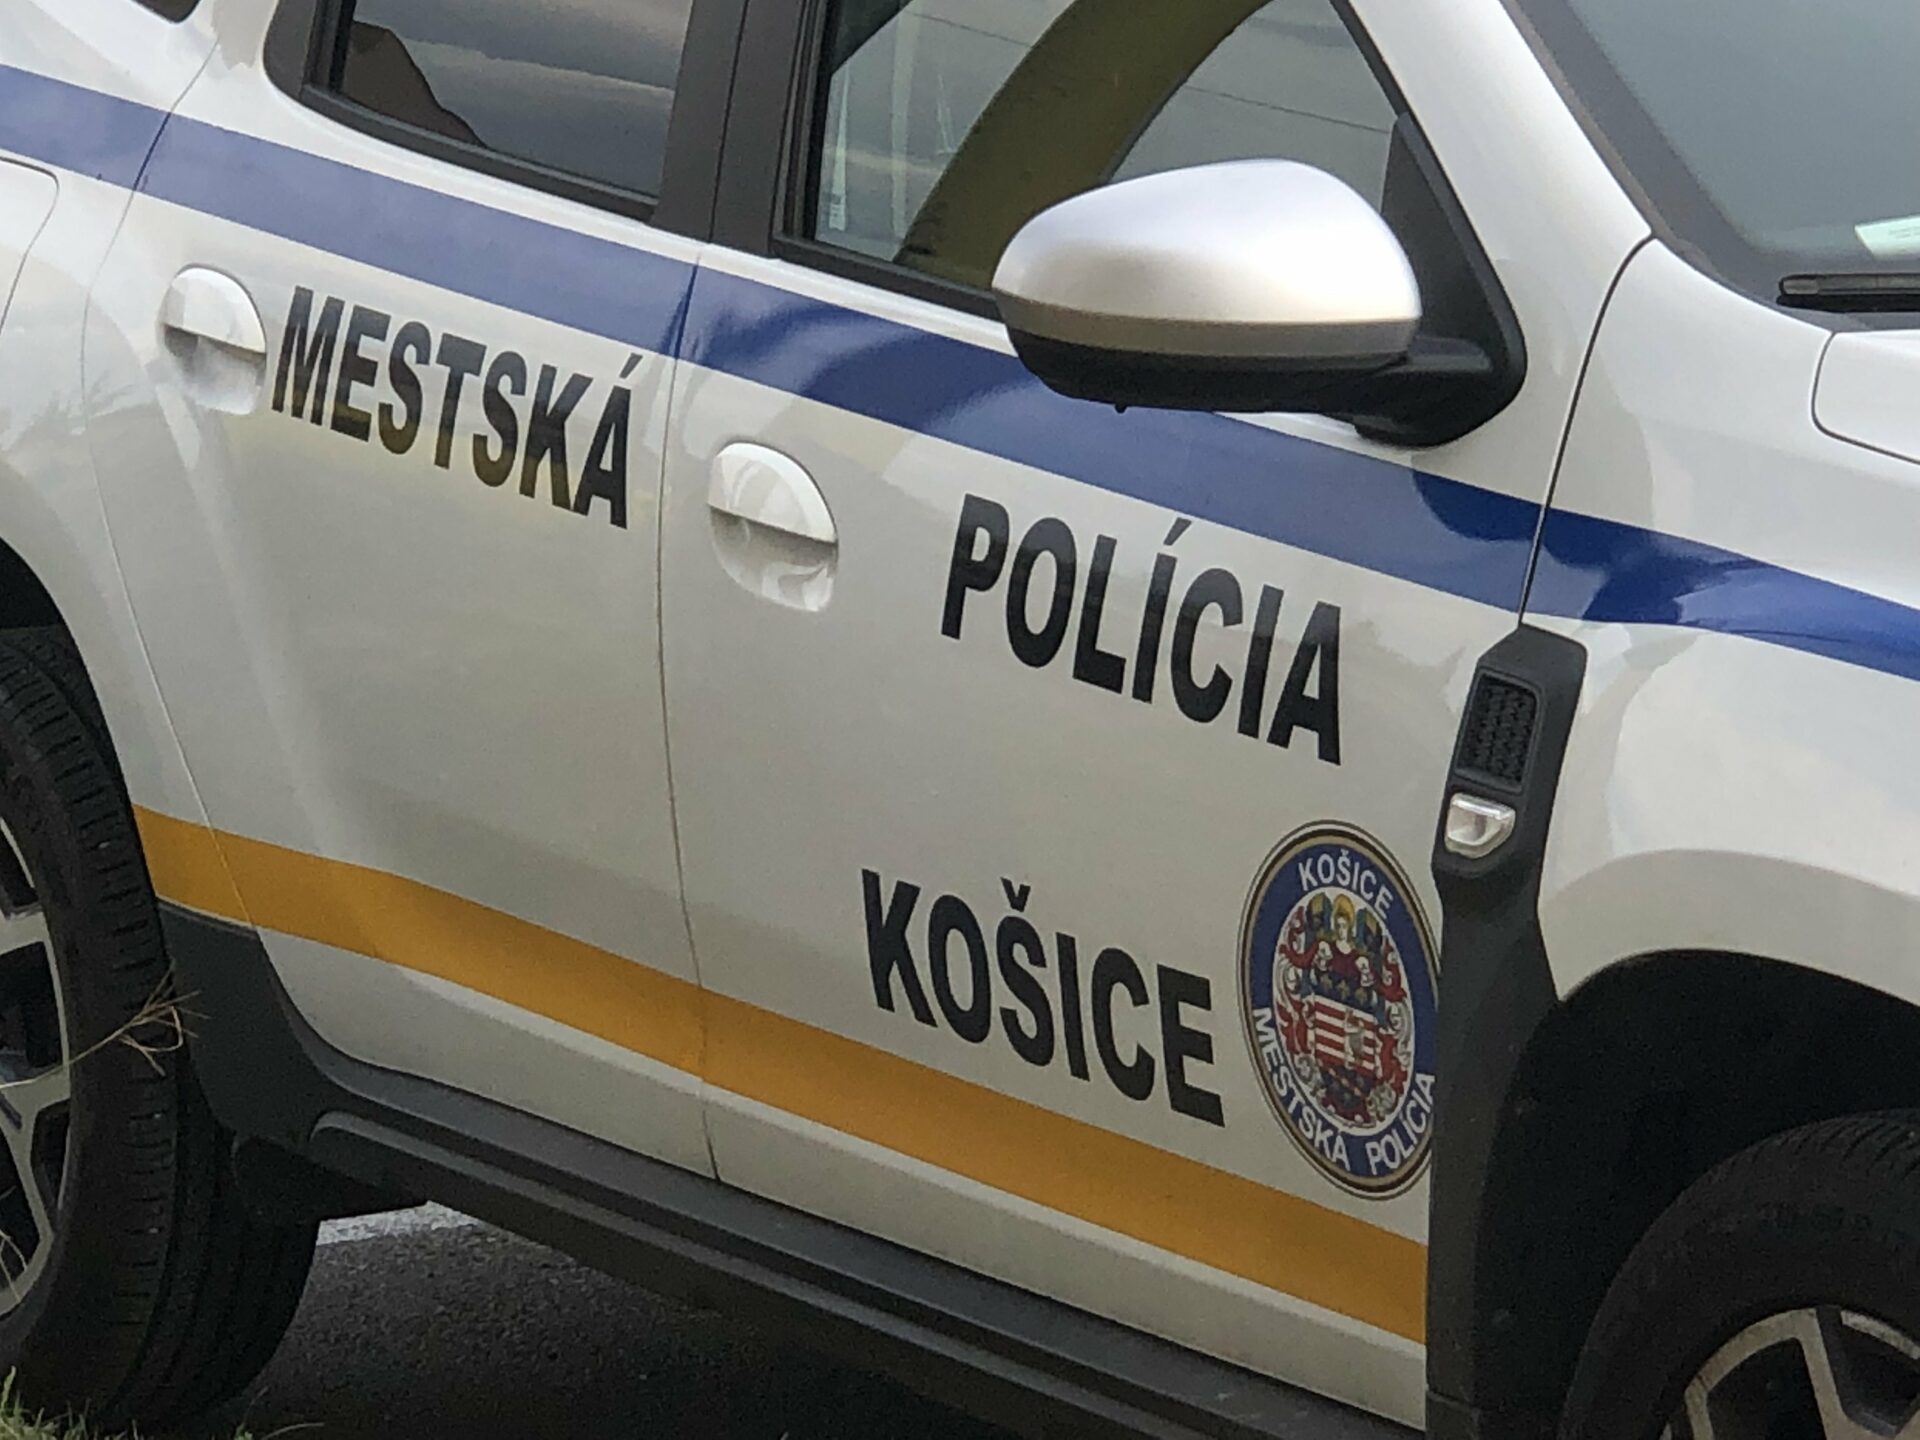 Mestskí policajti našli maloletého chlapca s viac ako 3 promile alkoholu